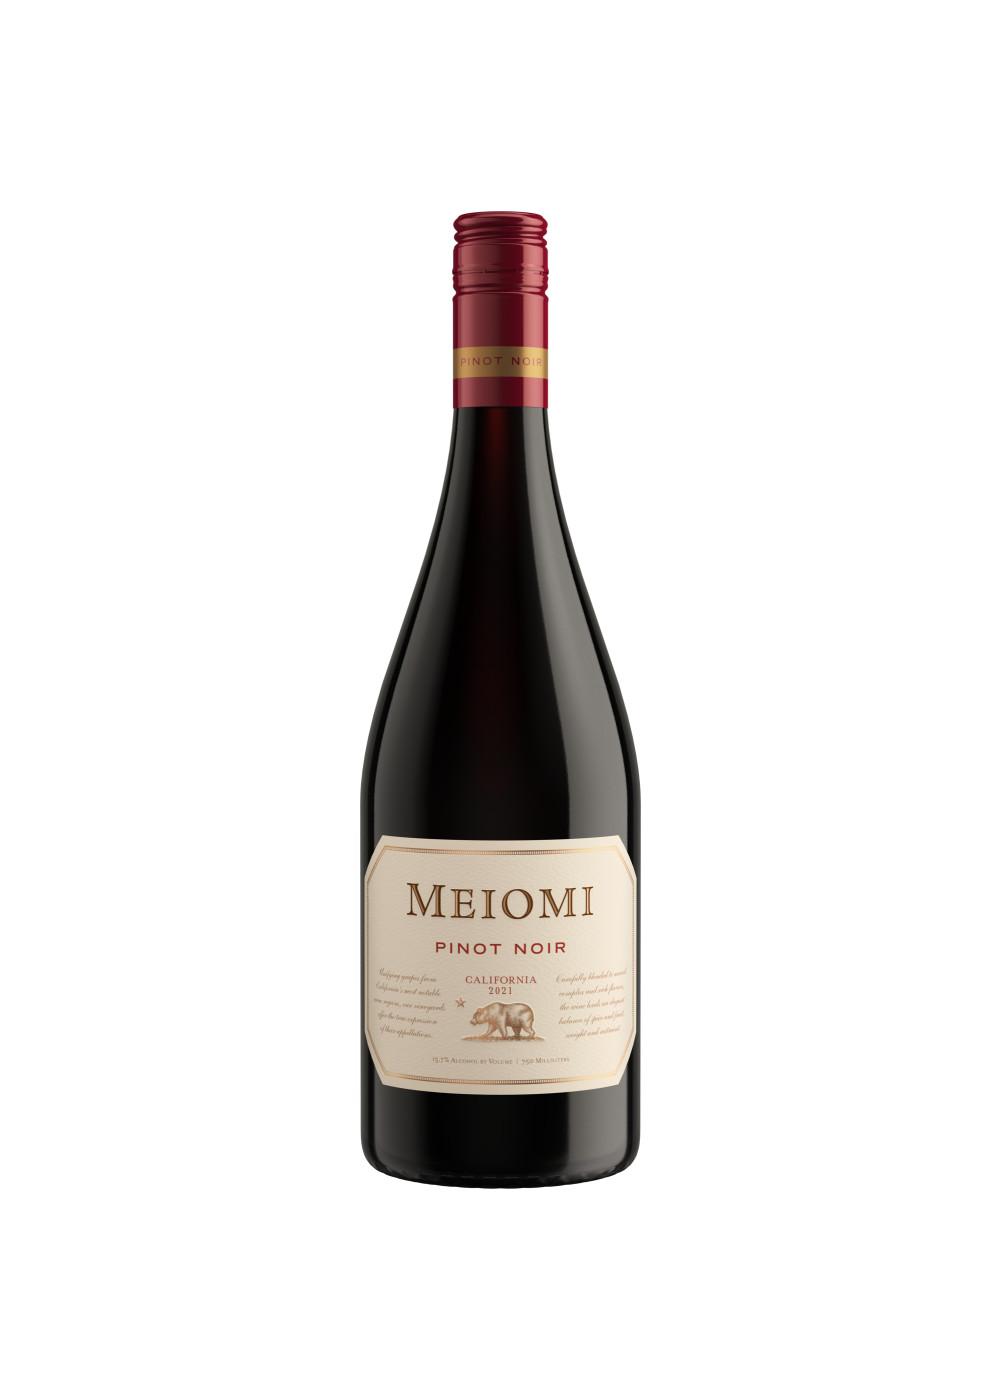 Meiomi Pinot Noir Red Wine 750 mL Bottle; image 1 of 4